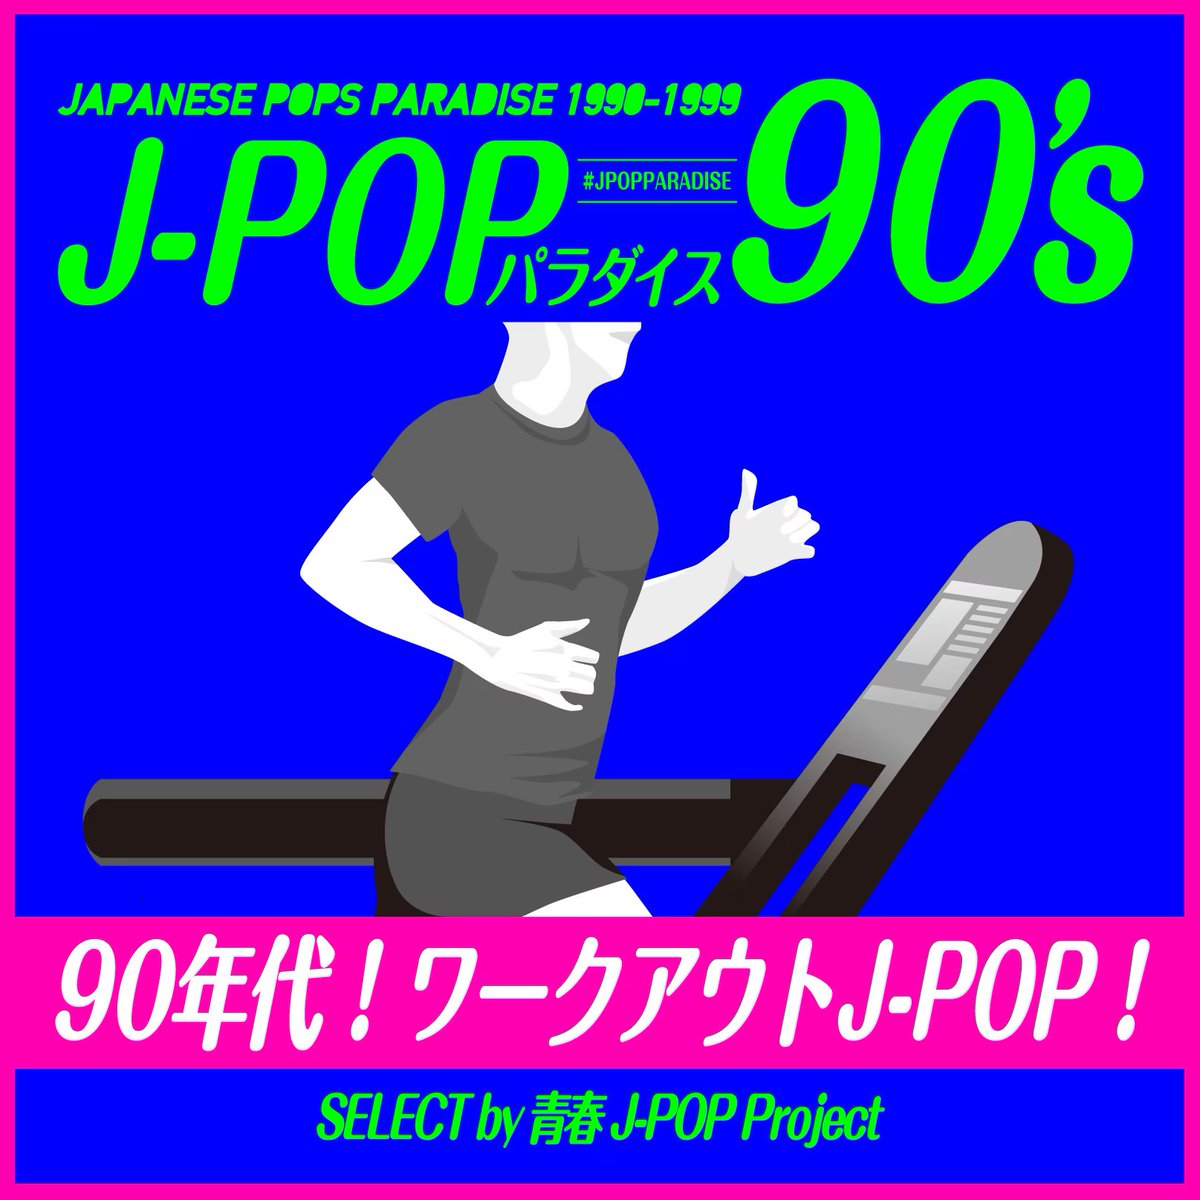 ⋱NEWS⋰
プレイリスト公開中🔔
￣￣￣￣￣￣￣￣￣￣￣
青春J-POP Projectがお届けするラジオ「J-POPパラダイス90’s」番組内で紹介した楽曲のプレイリストを公開中📝

5月の #ゆけむりDJs  によるMIXテーマは『90年代 ワークアウトJ-POP』🏋️

🎧聴く
seishun-jpop.lnk.to/202405

#jpopparadise #DJBLUE